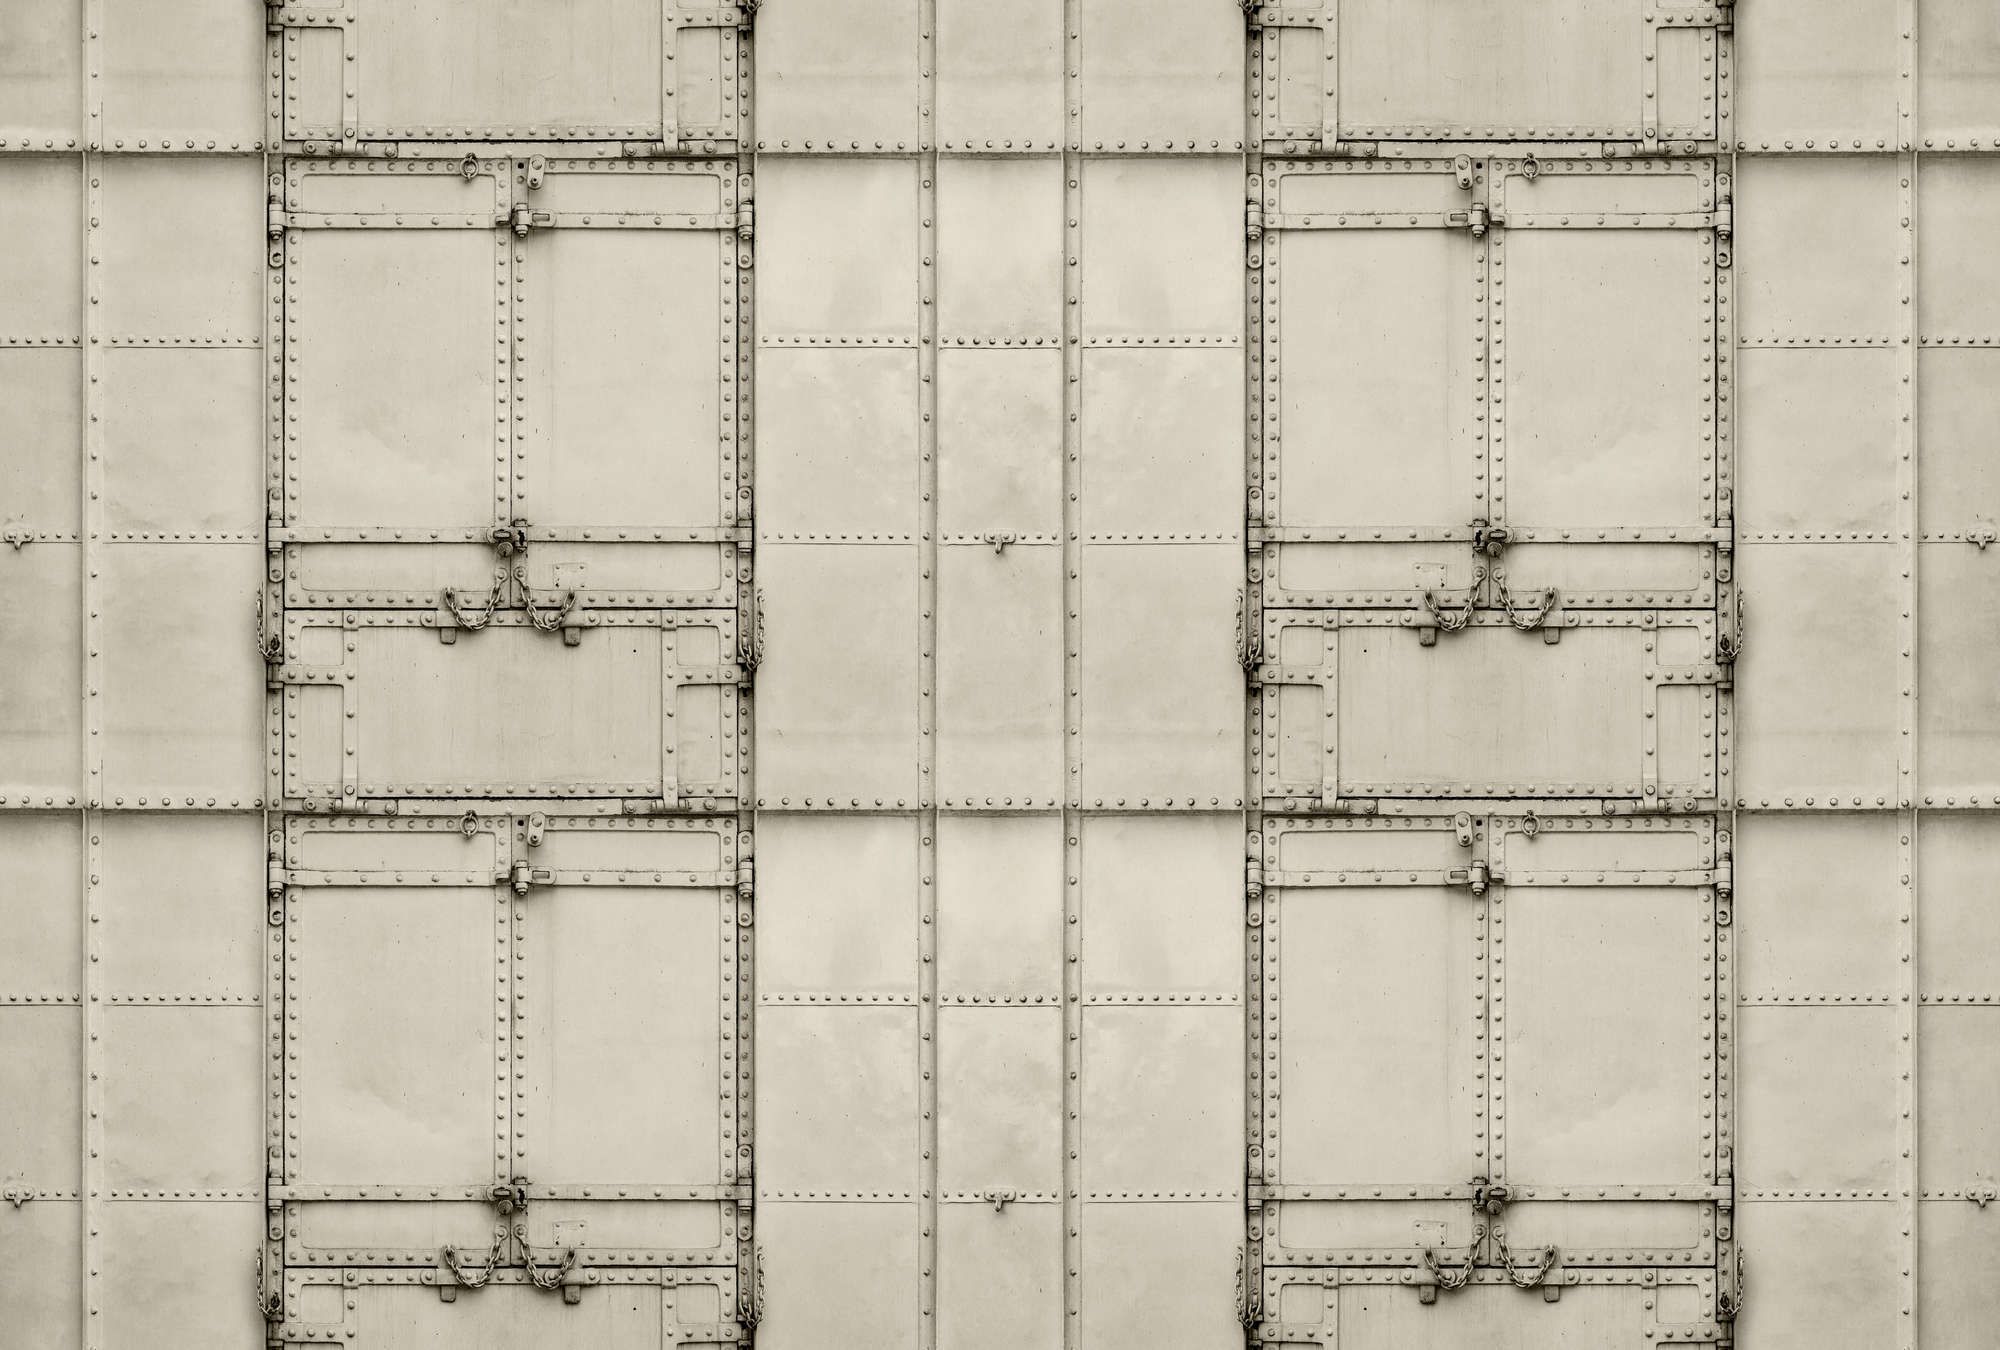             Digital behang »madurai« - Patchwork ontwerp met metalen platen met klinknagels & kettingen - Gladde, licht parelmoerachtige non-woven stof
        